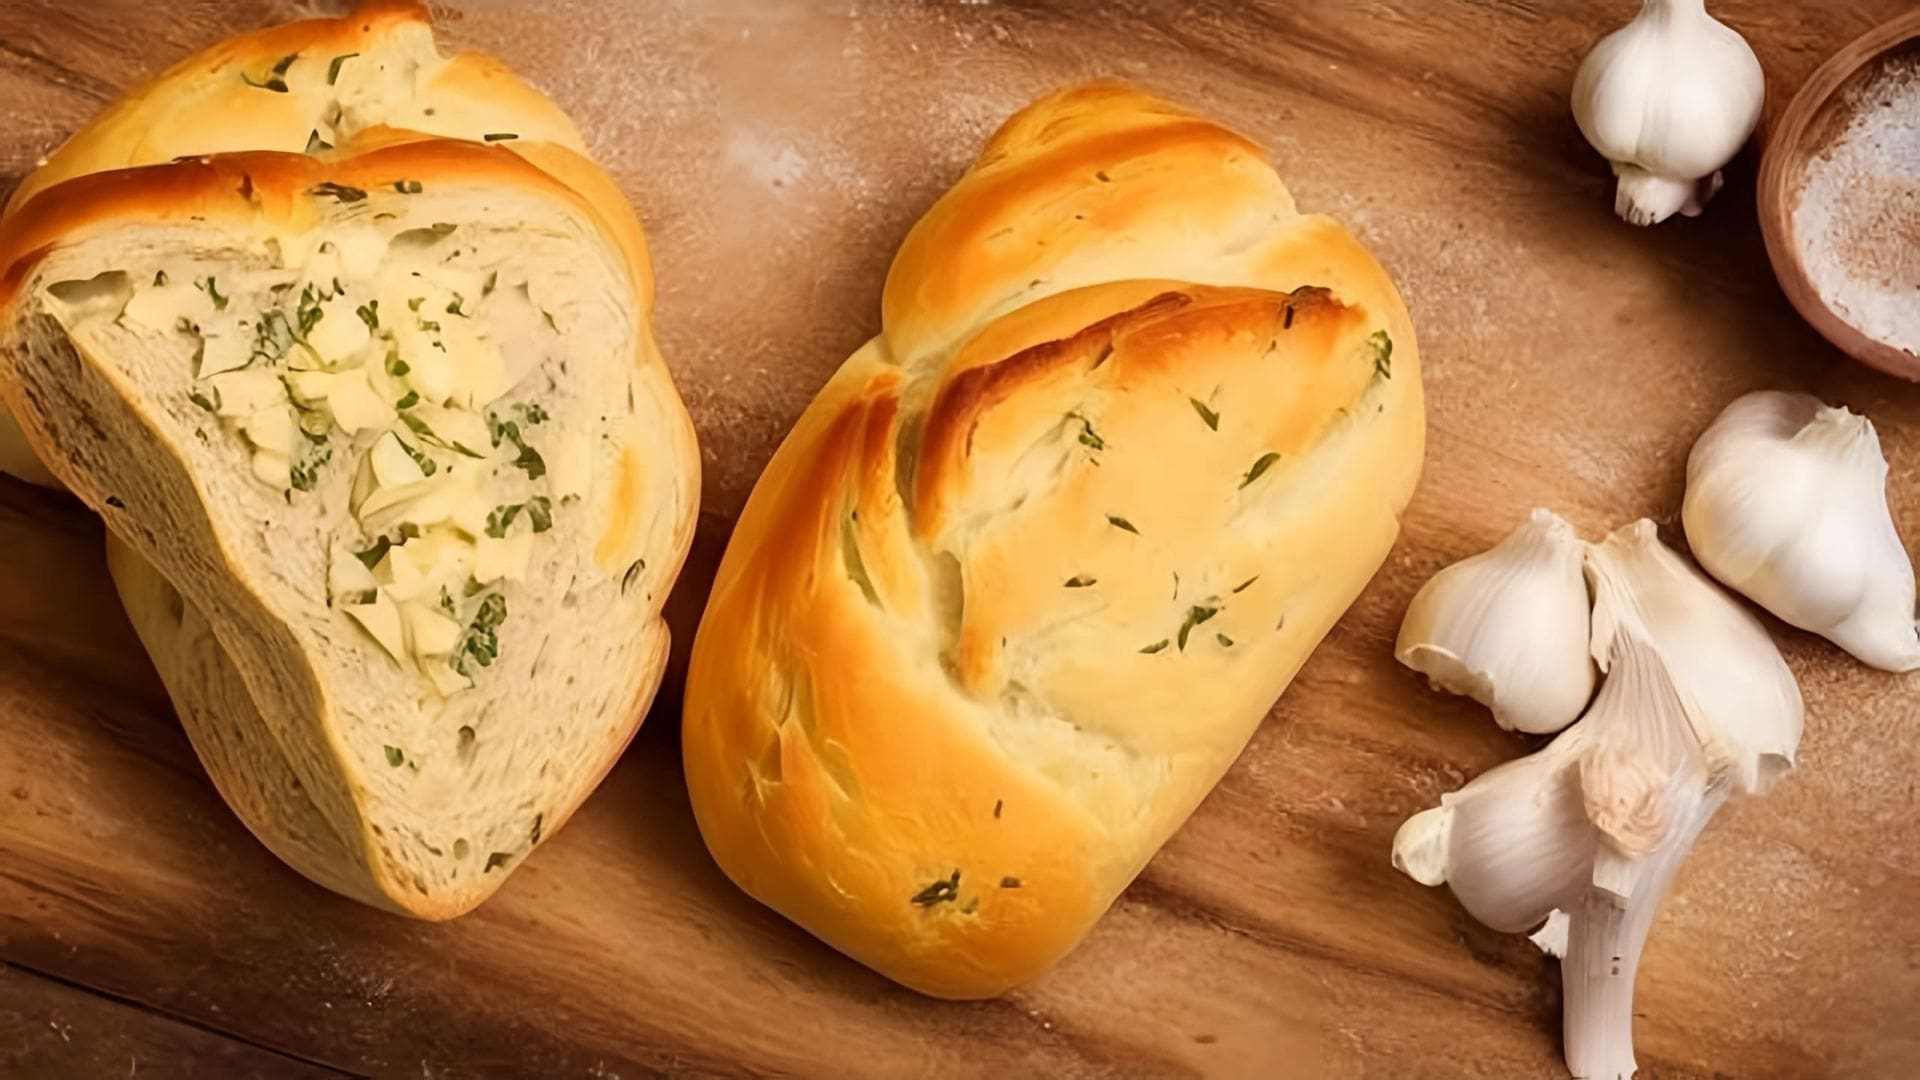 В этом видео демонстрируется процесс приготовления итальянского сырно-чесночного хлеба, который называется фокачча